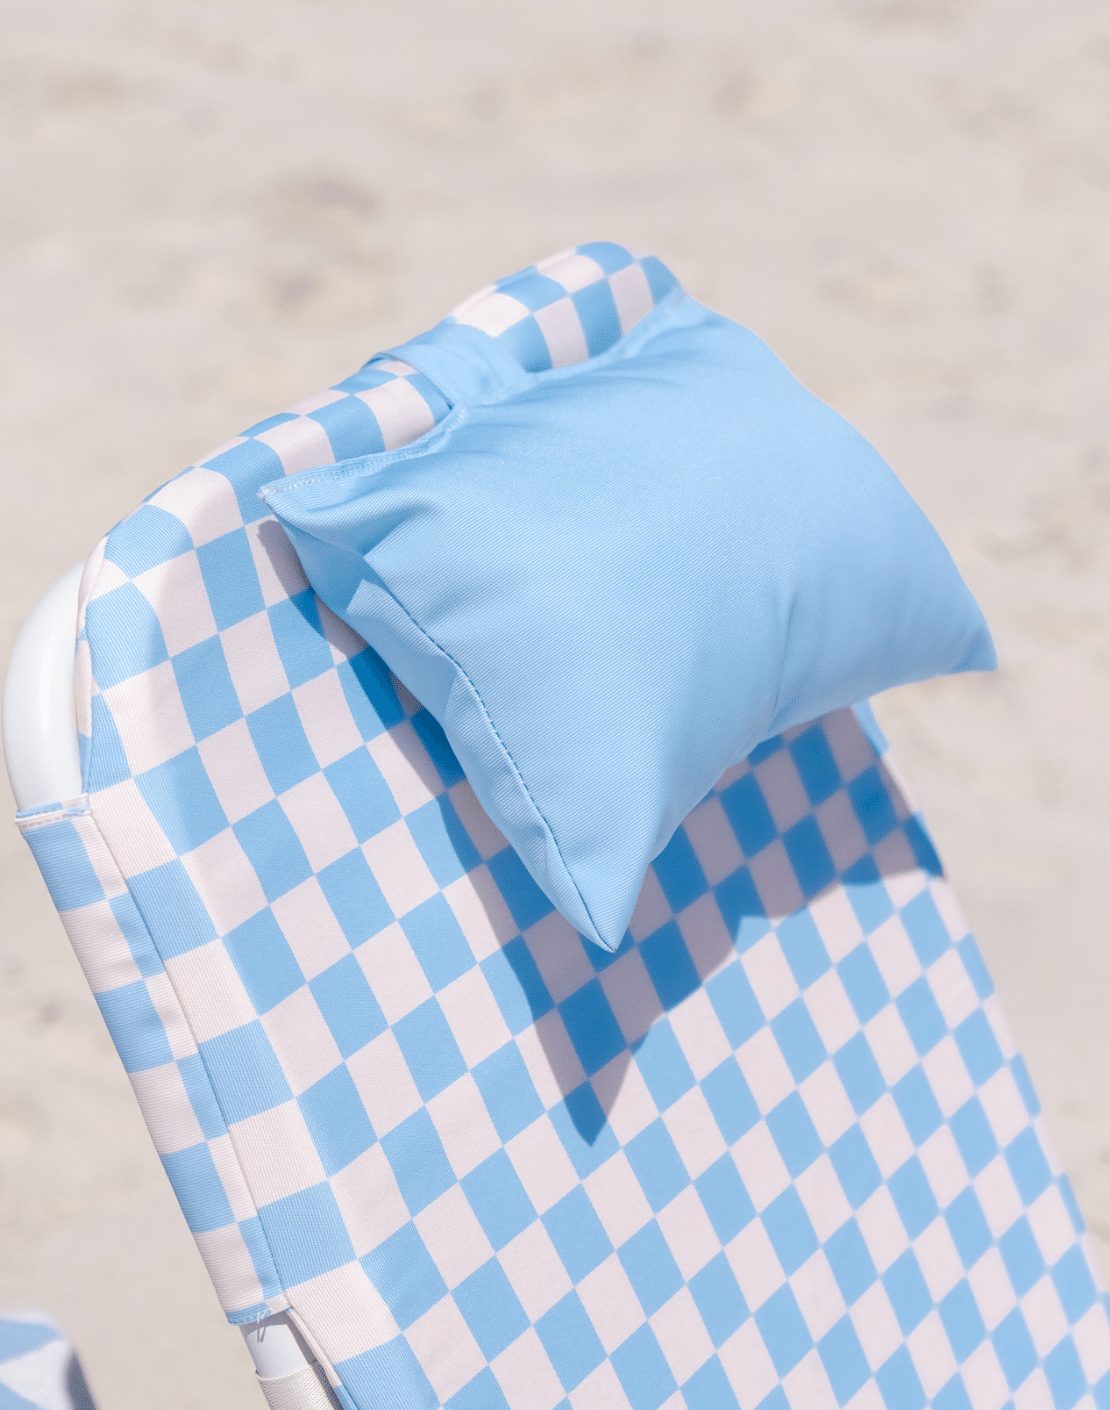 Sorrento Beach Chair Head Pillow